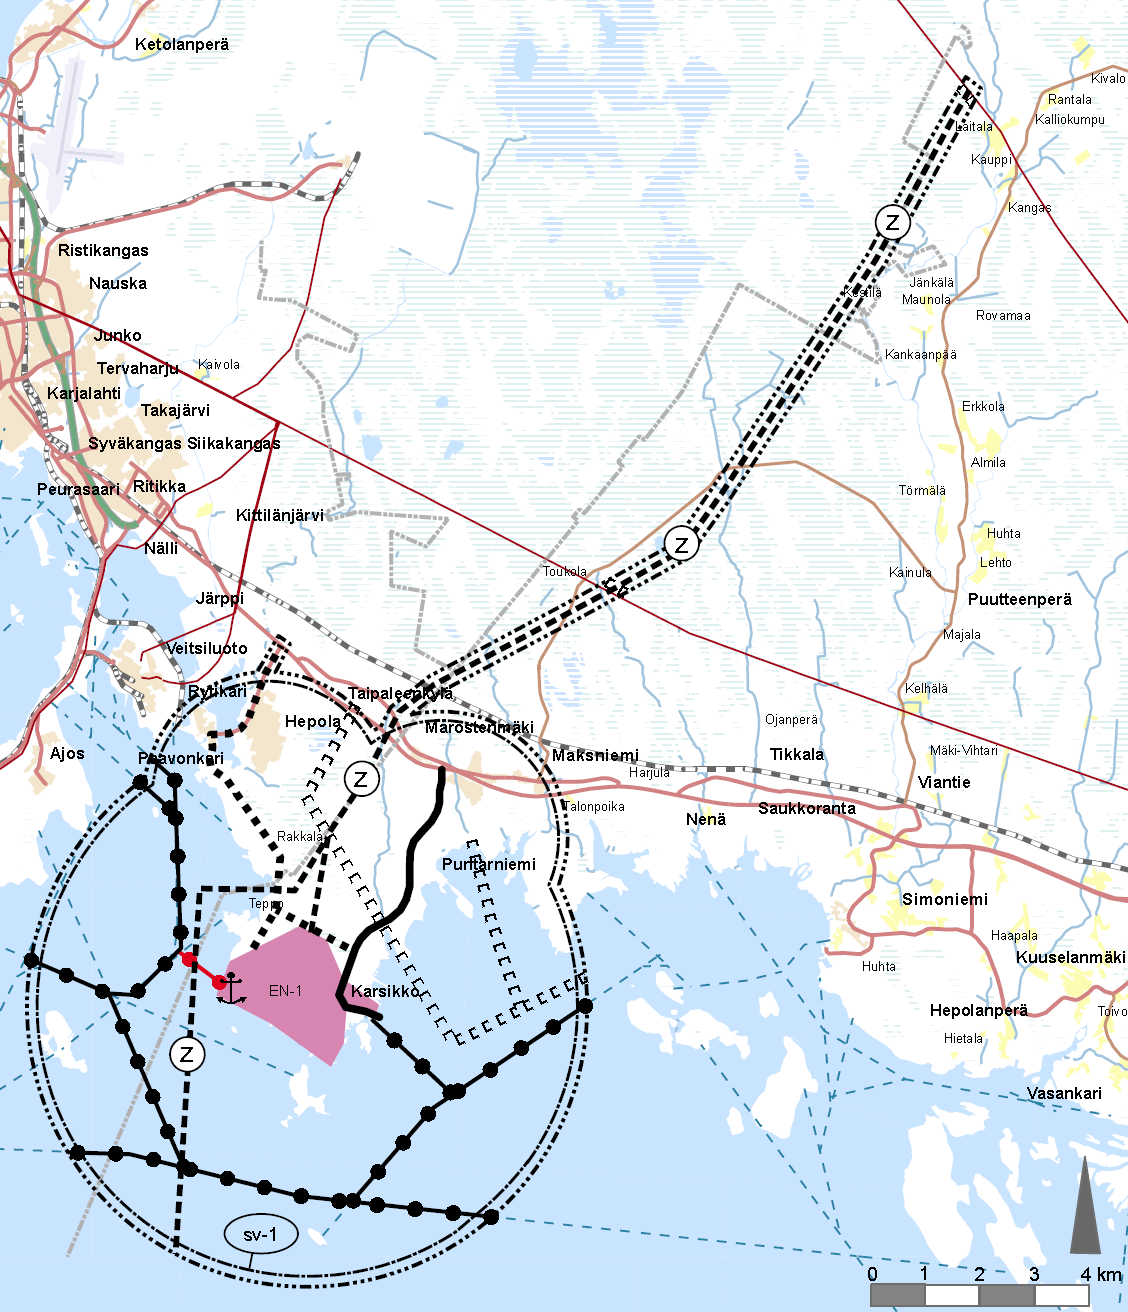 15 Kemi-Tornio alueen ydinvoimamaakuntakaava on saanut lainvoiman 21.9.2011, kun korkein hallinto-oikeus hylkäsi maakuntakaavasta tehdyt valitukset.